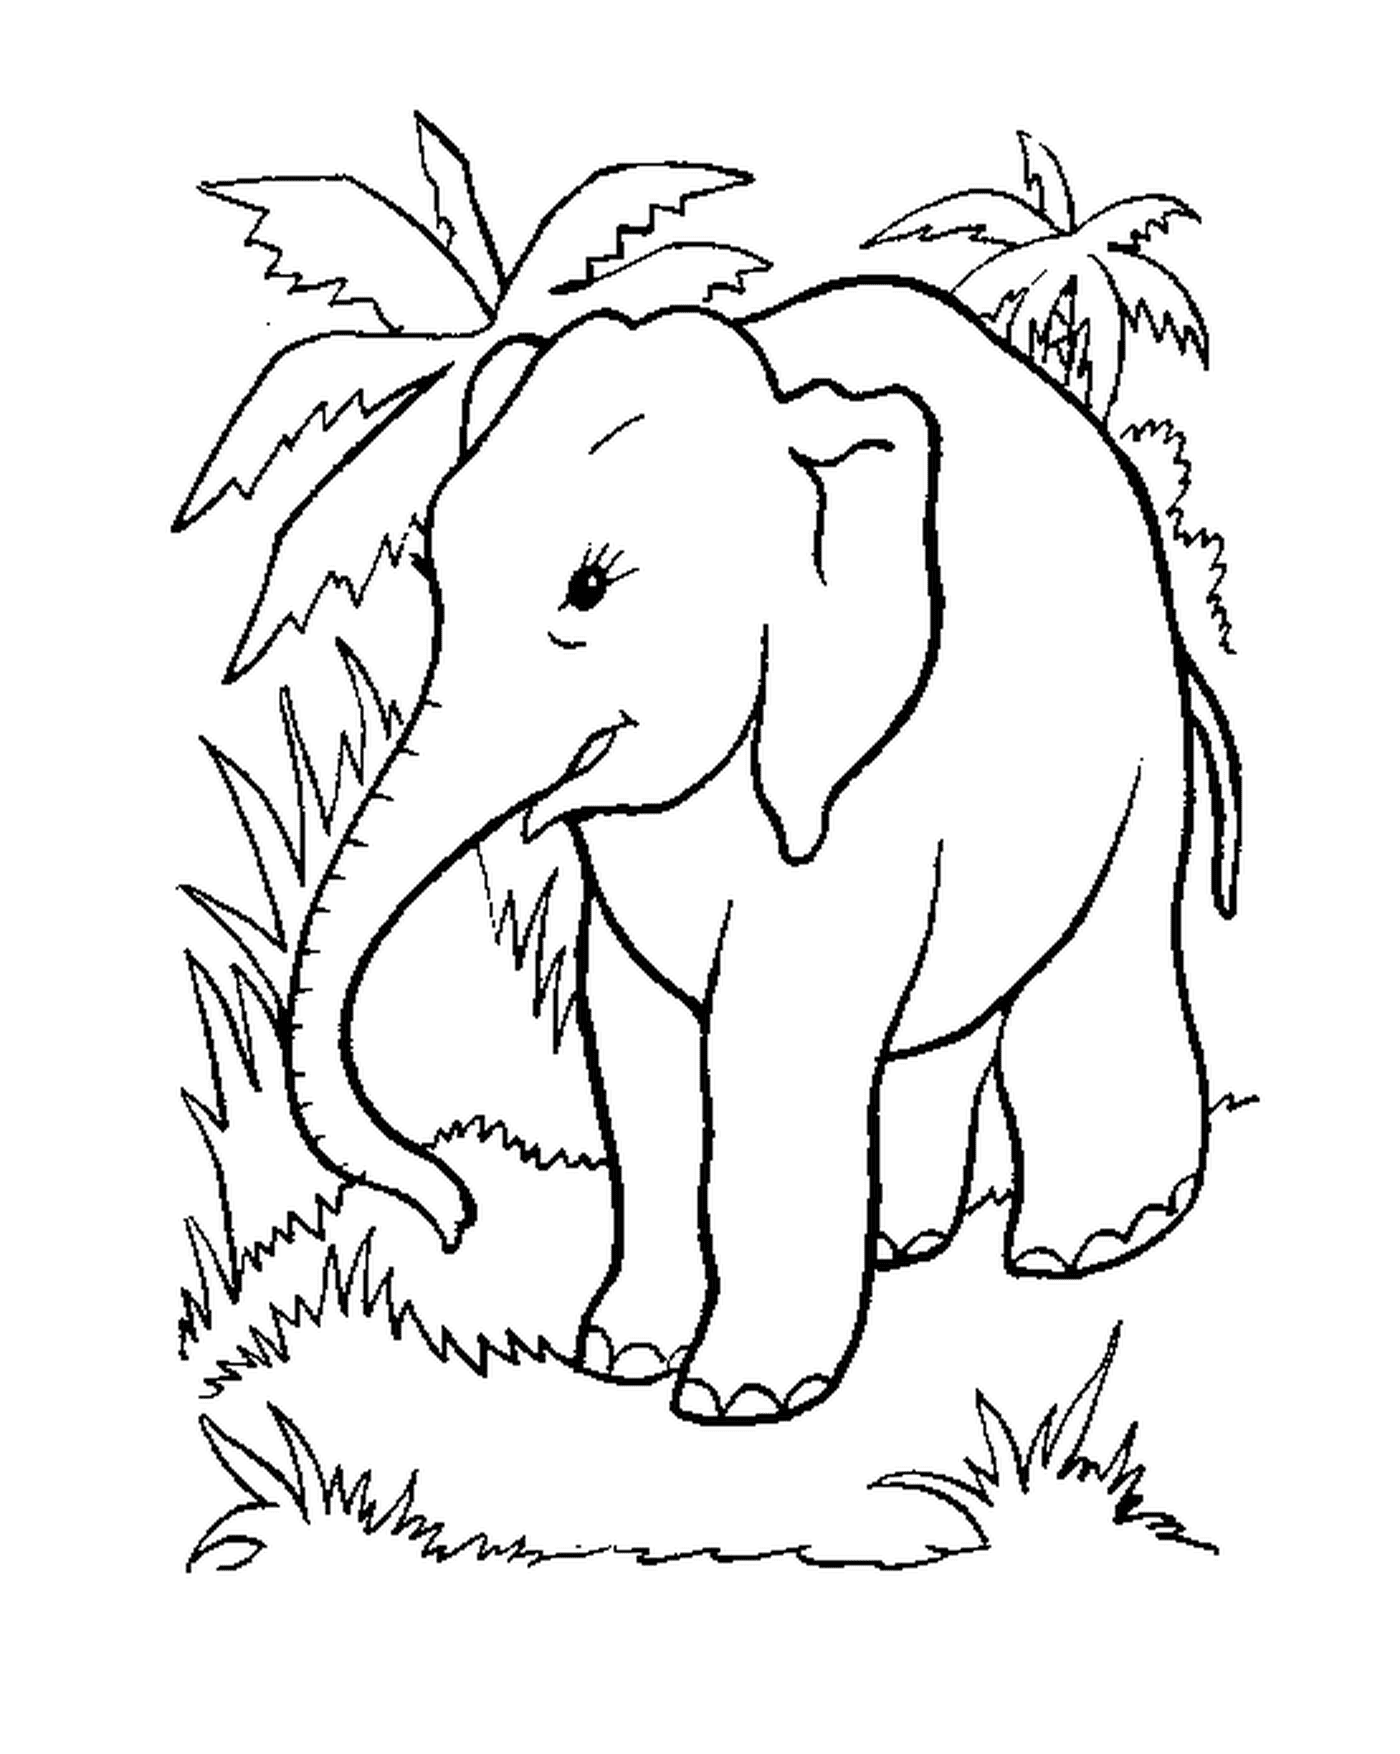  Слон, стоящий в траве рядом с деревом 